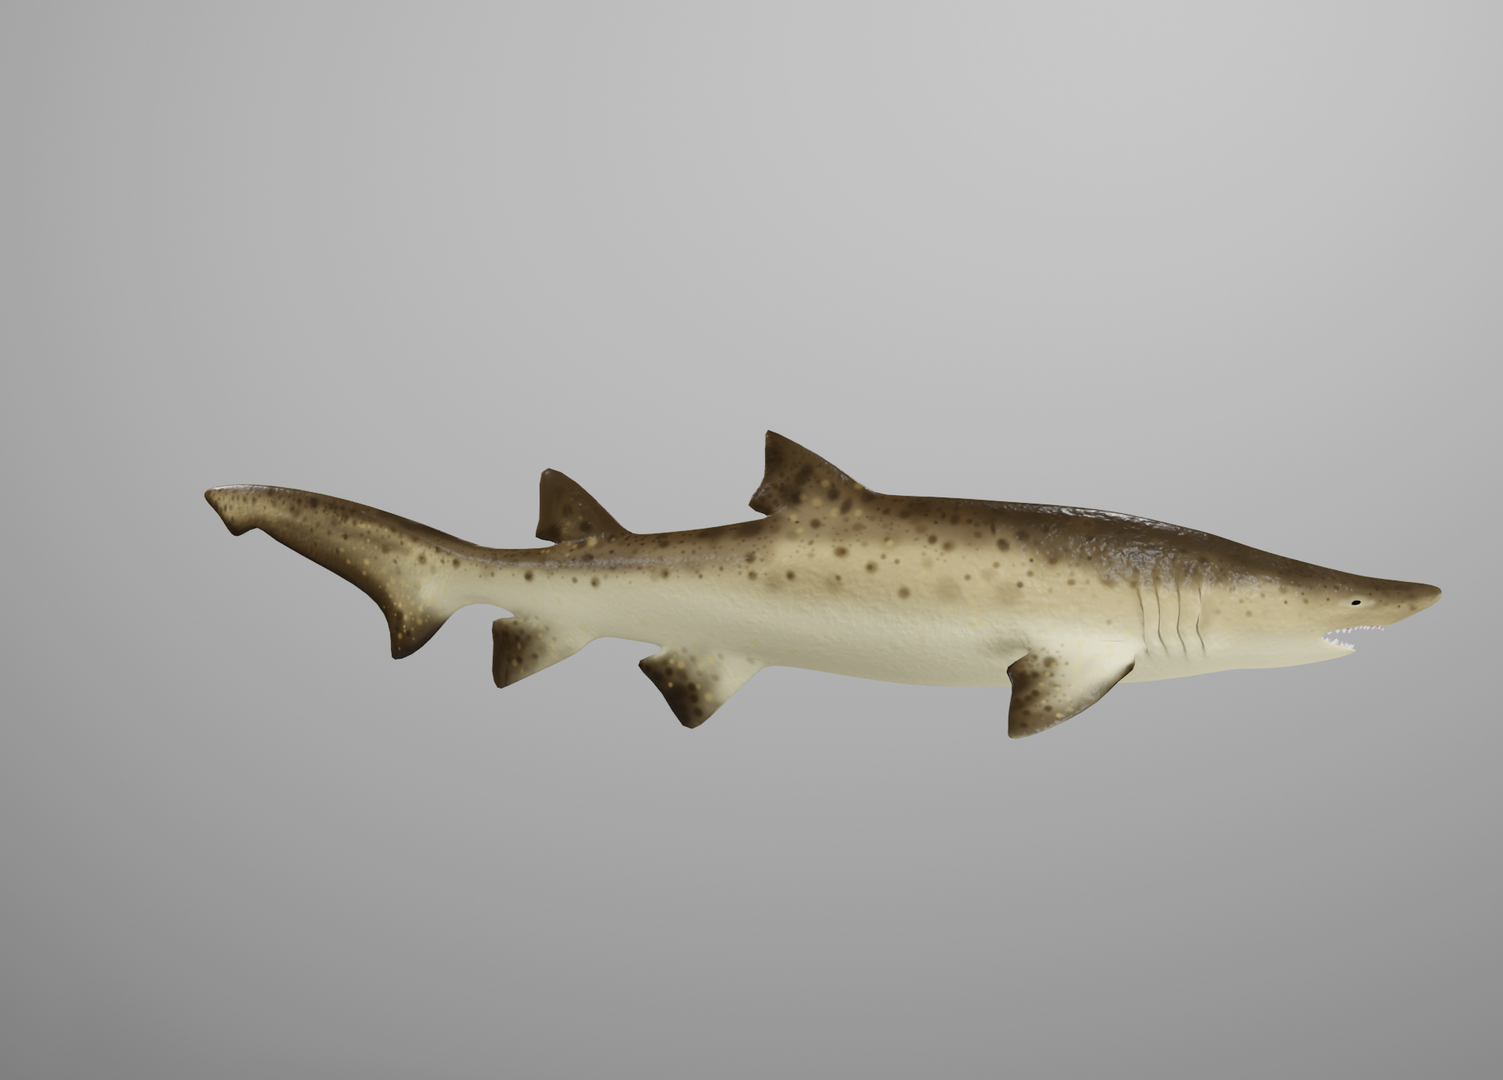 Blender 2.8 Tutorial - Modeling a shark 